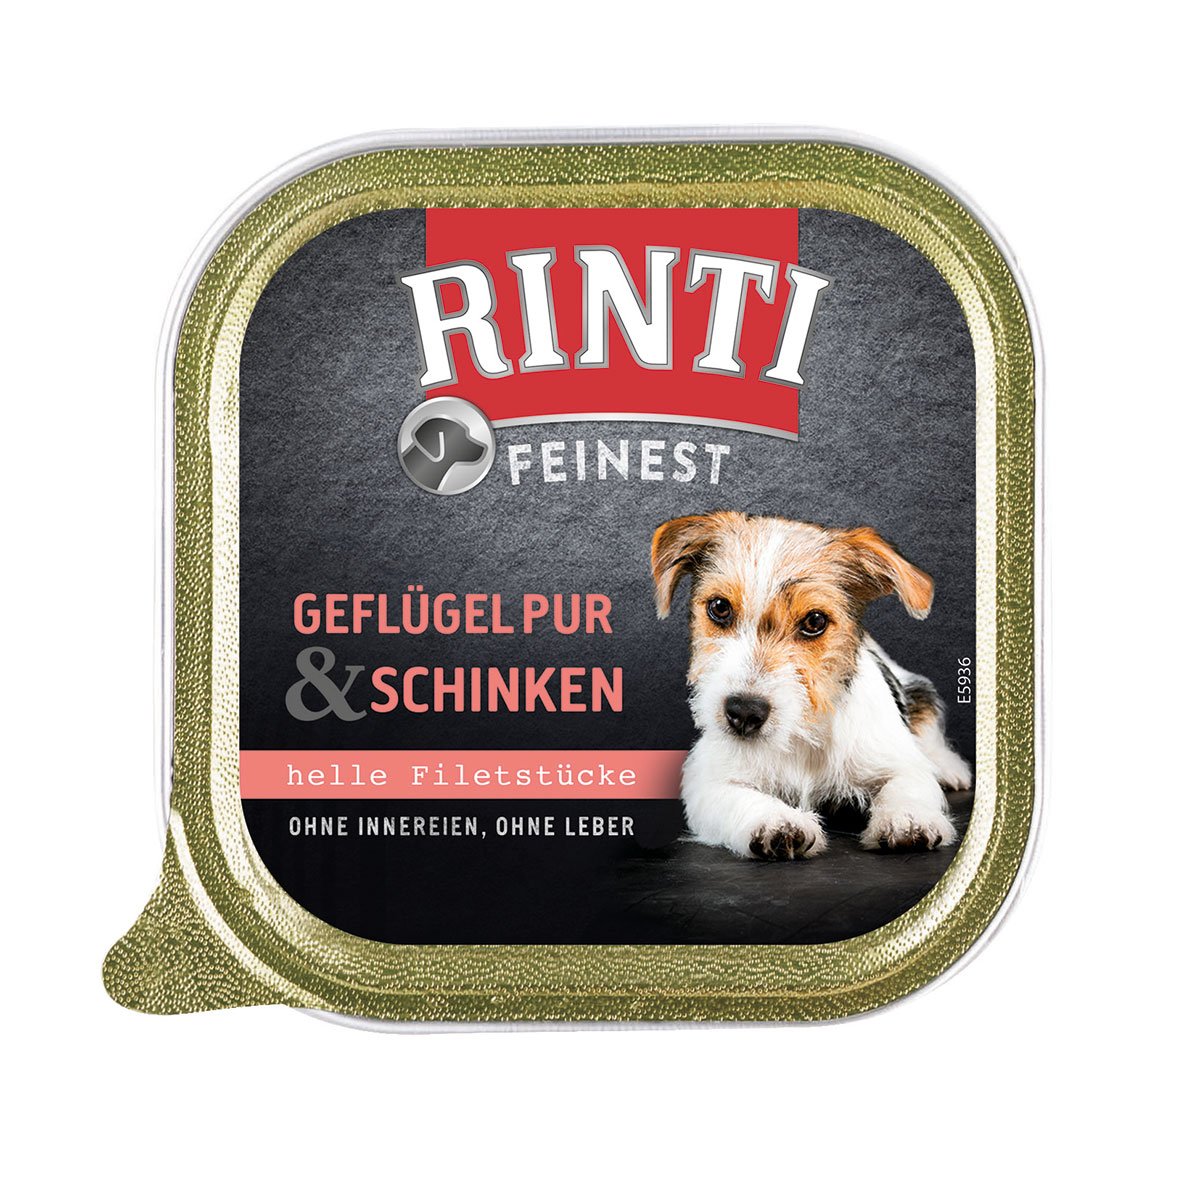 Rinti Feinest Geflügel pur & Schinken 11x150g